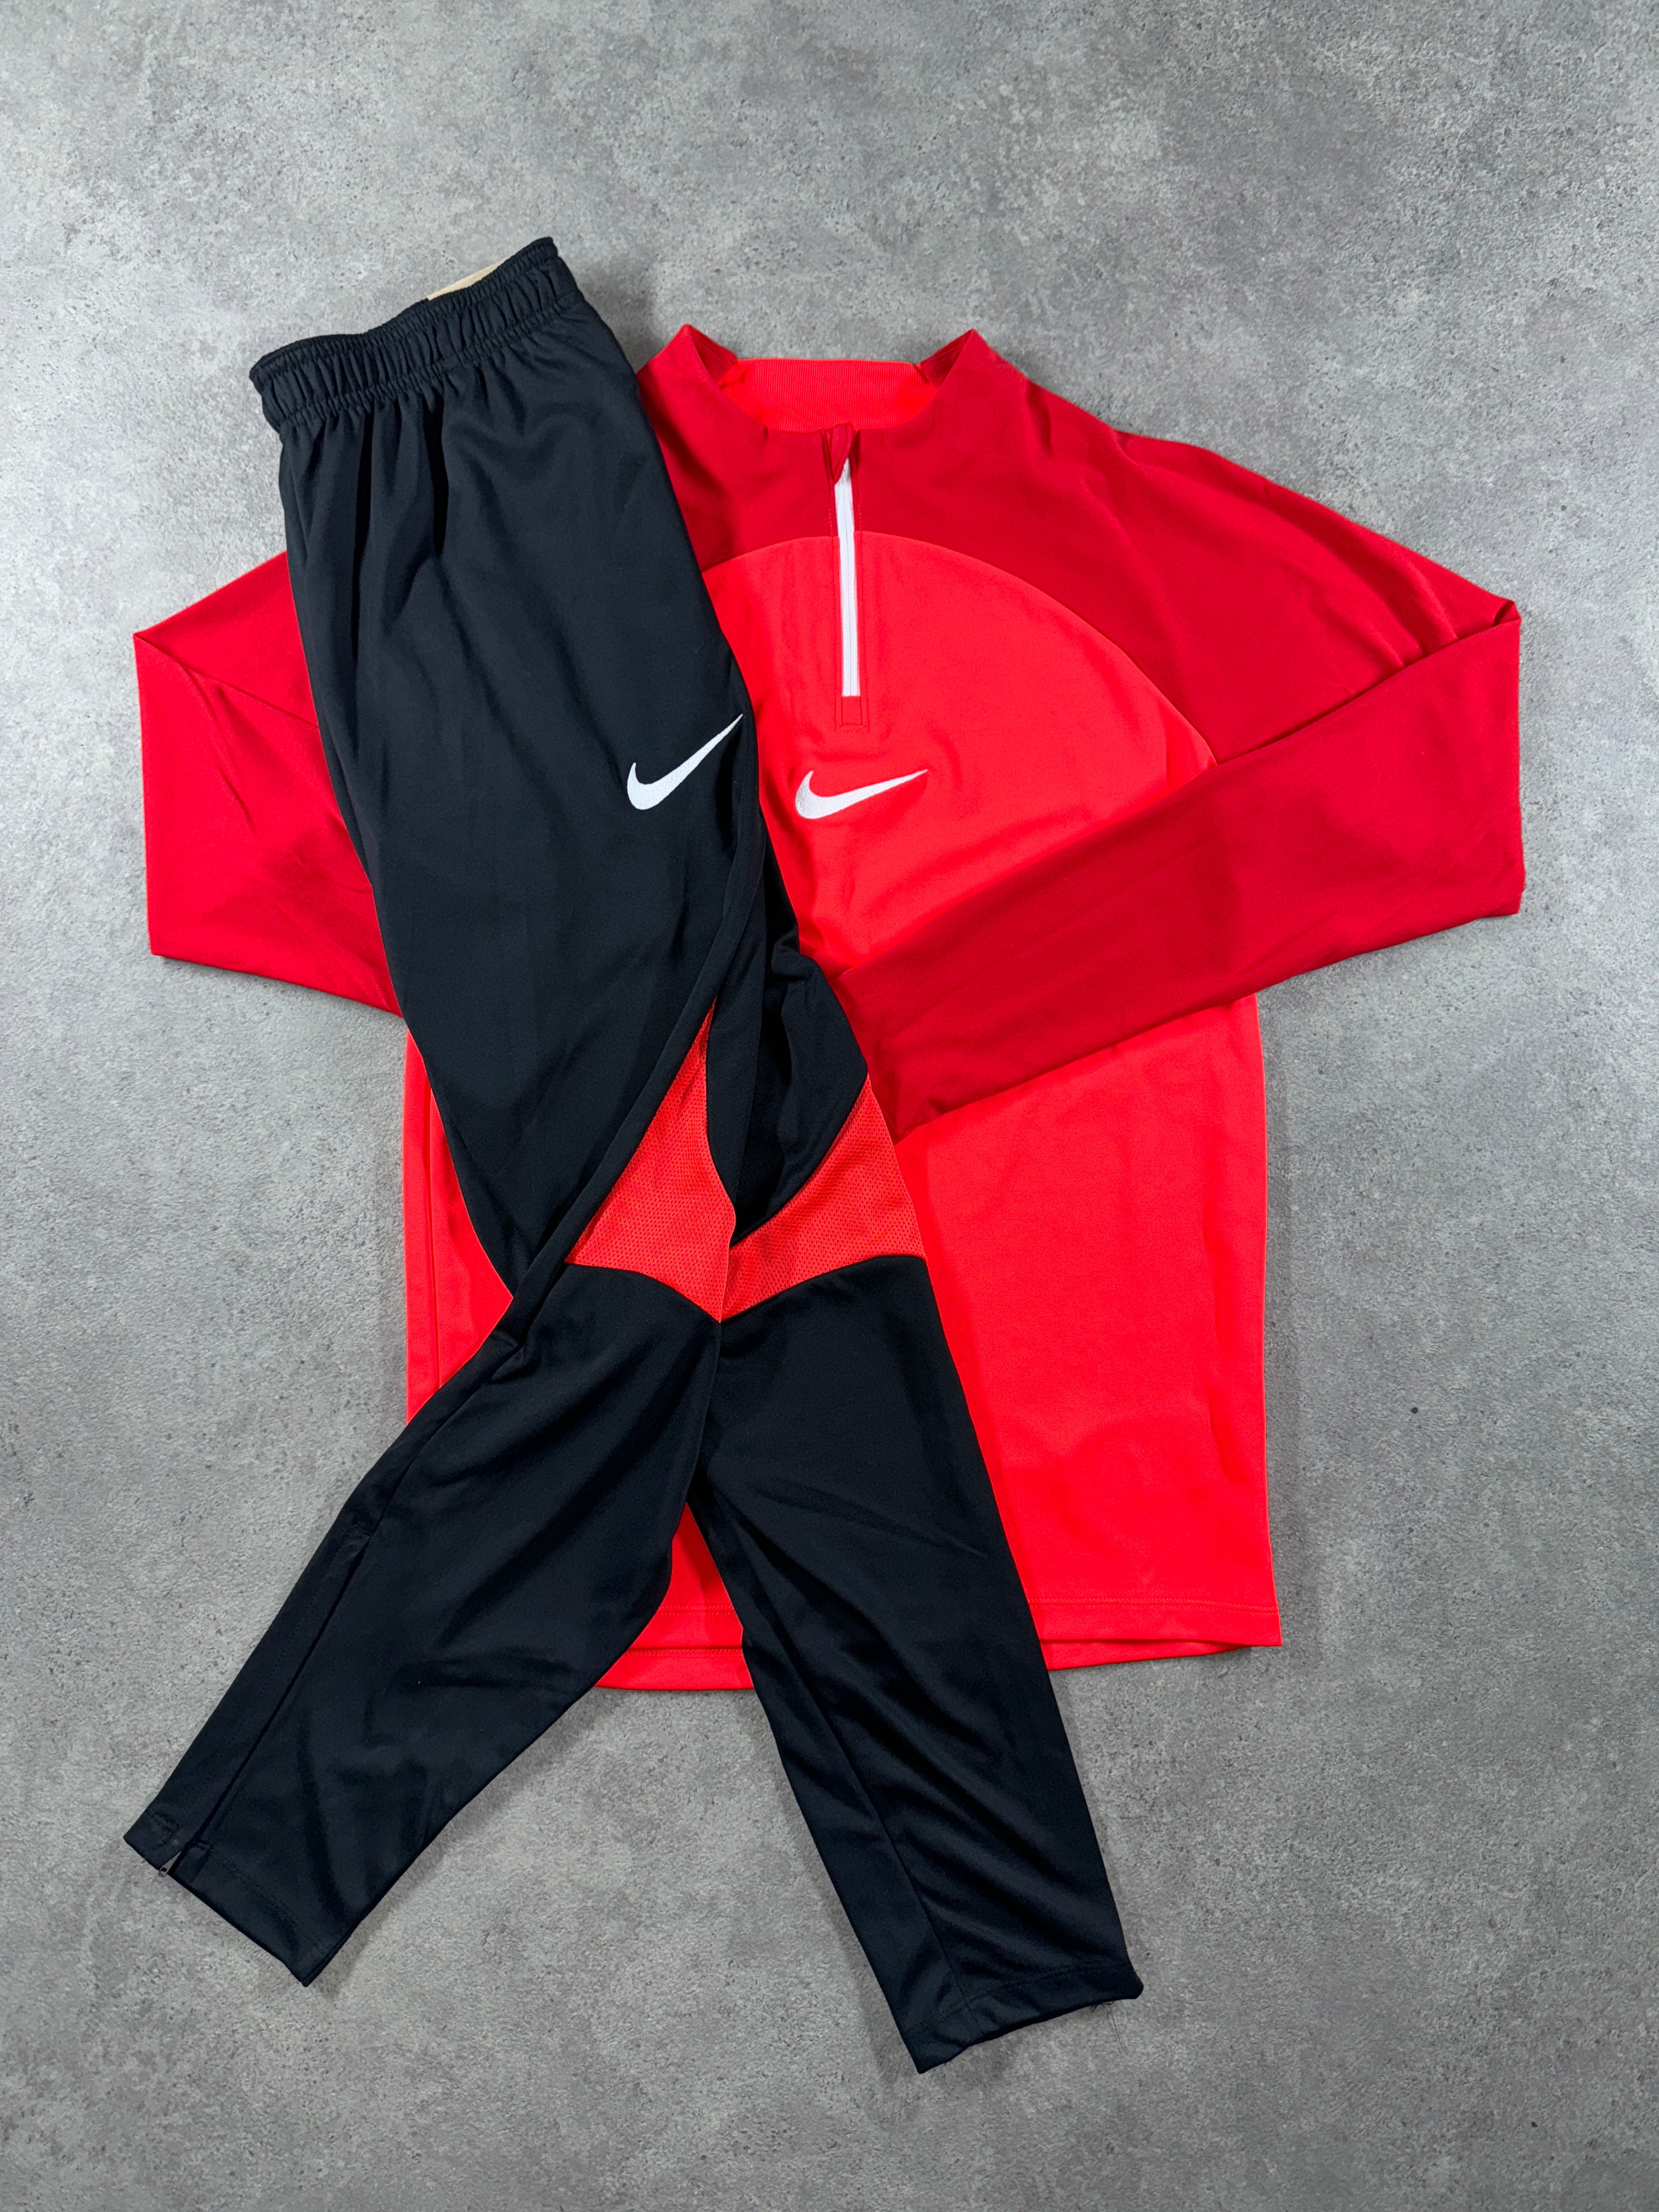 Nike - Academy Pro Tracksuit - Crimson/Black